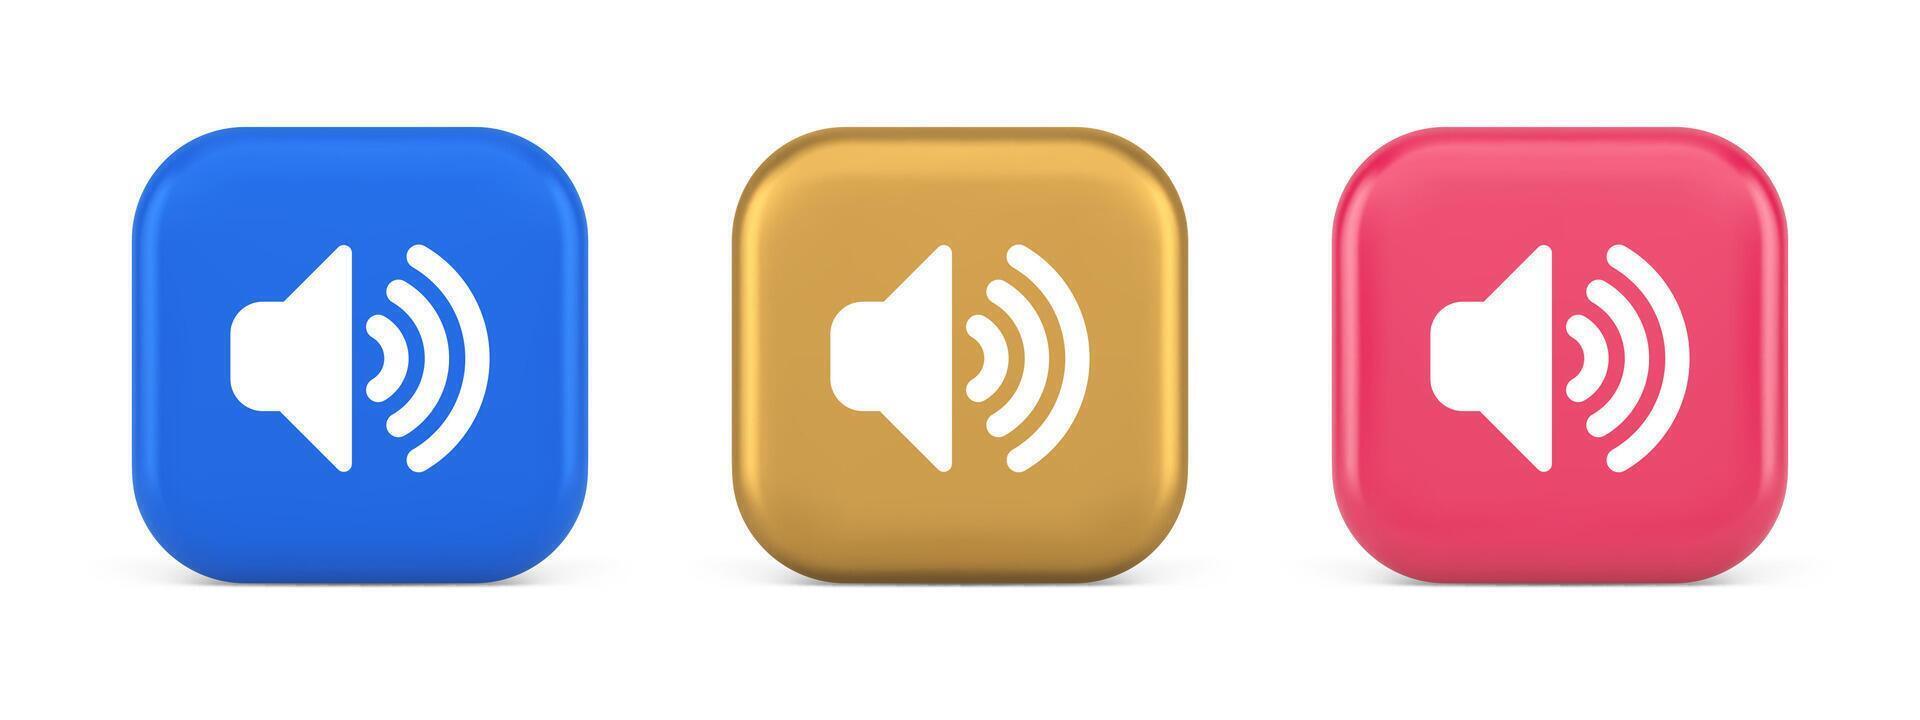 le volume du son bouton orateur acoustique niveau bruit vague contrôle 3d réaliste icône vecteur